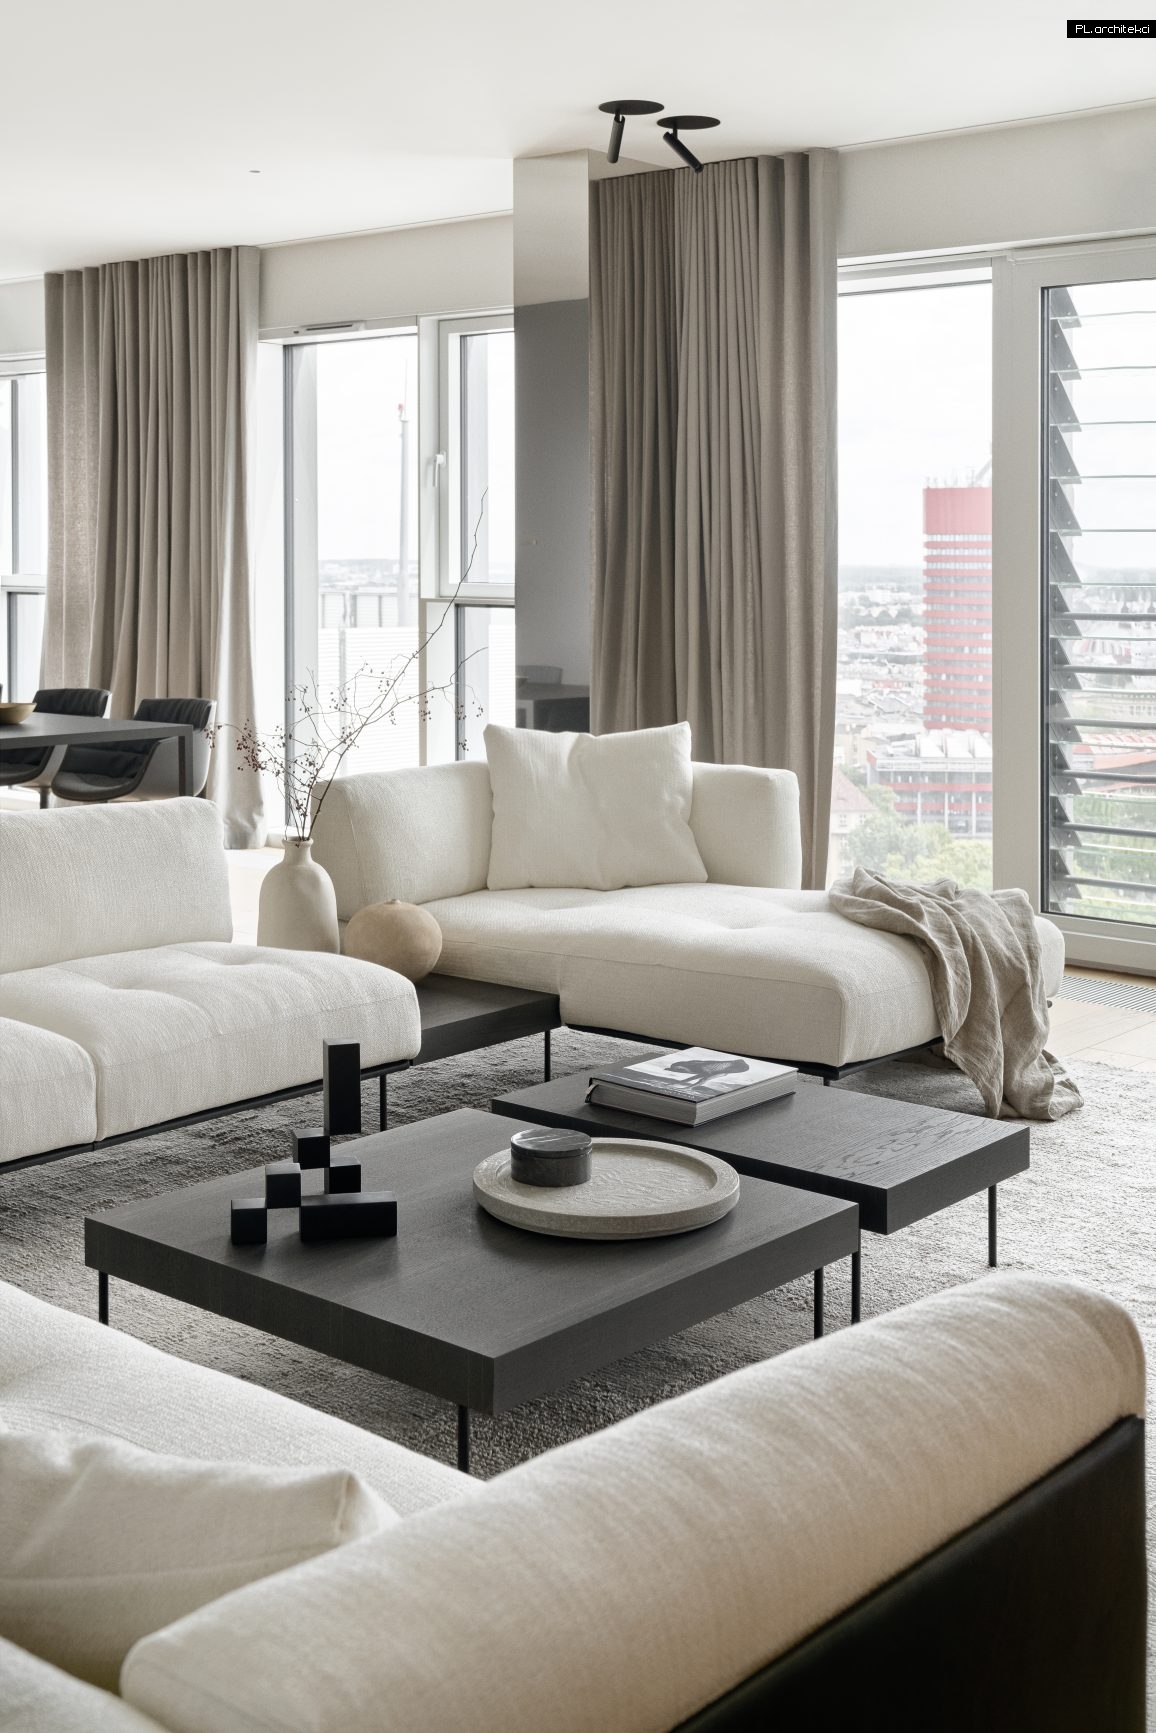 wnętrza apartamentu nad morzem nowoczesny design minimalizm biel biały drewno gdańsk plarchitekci